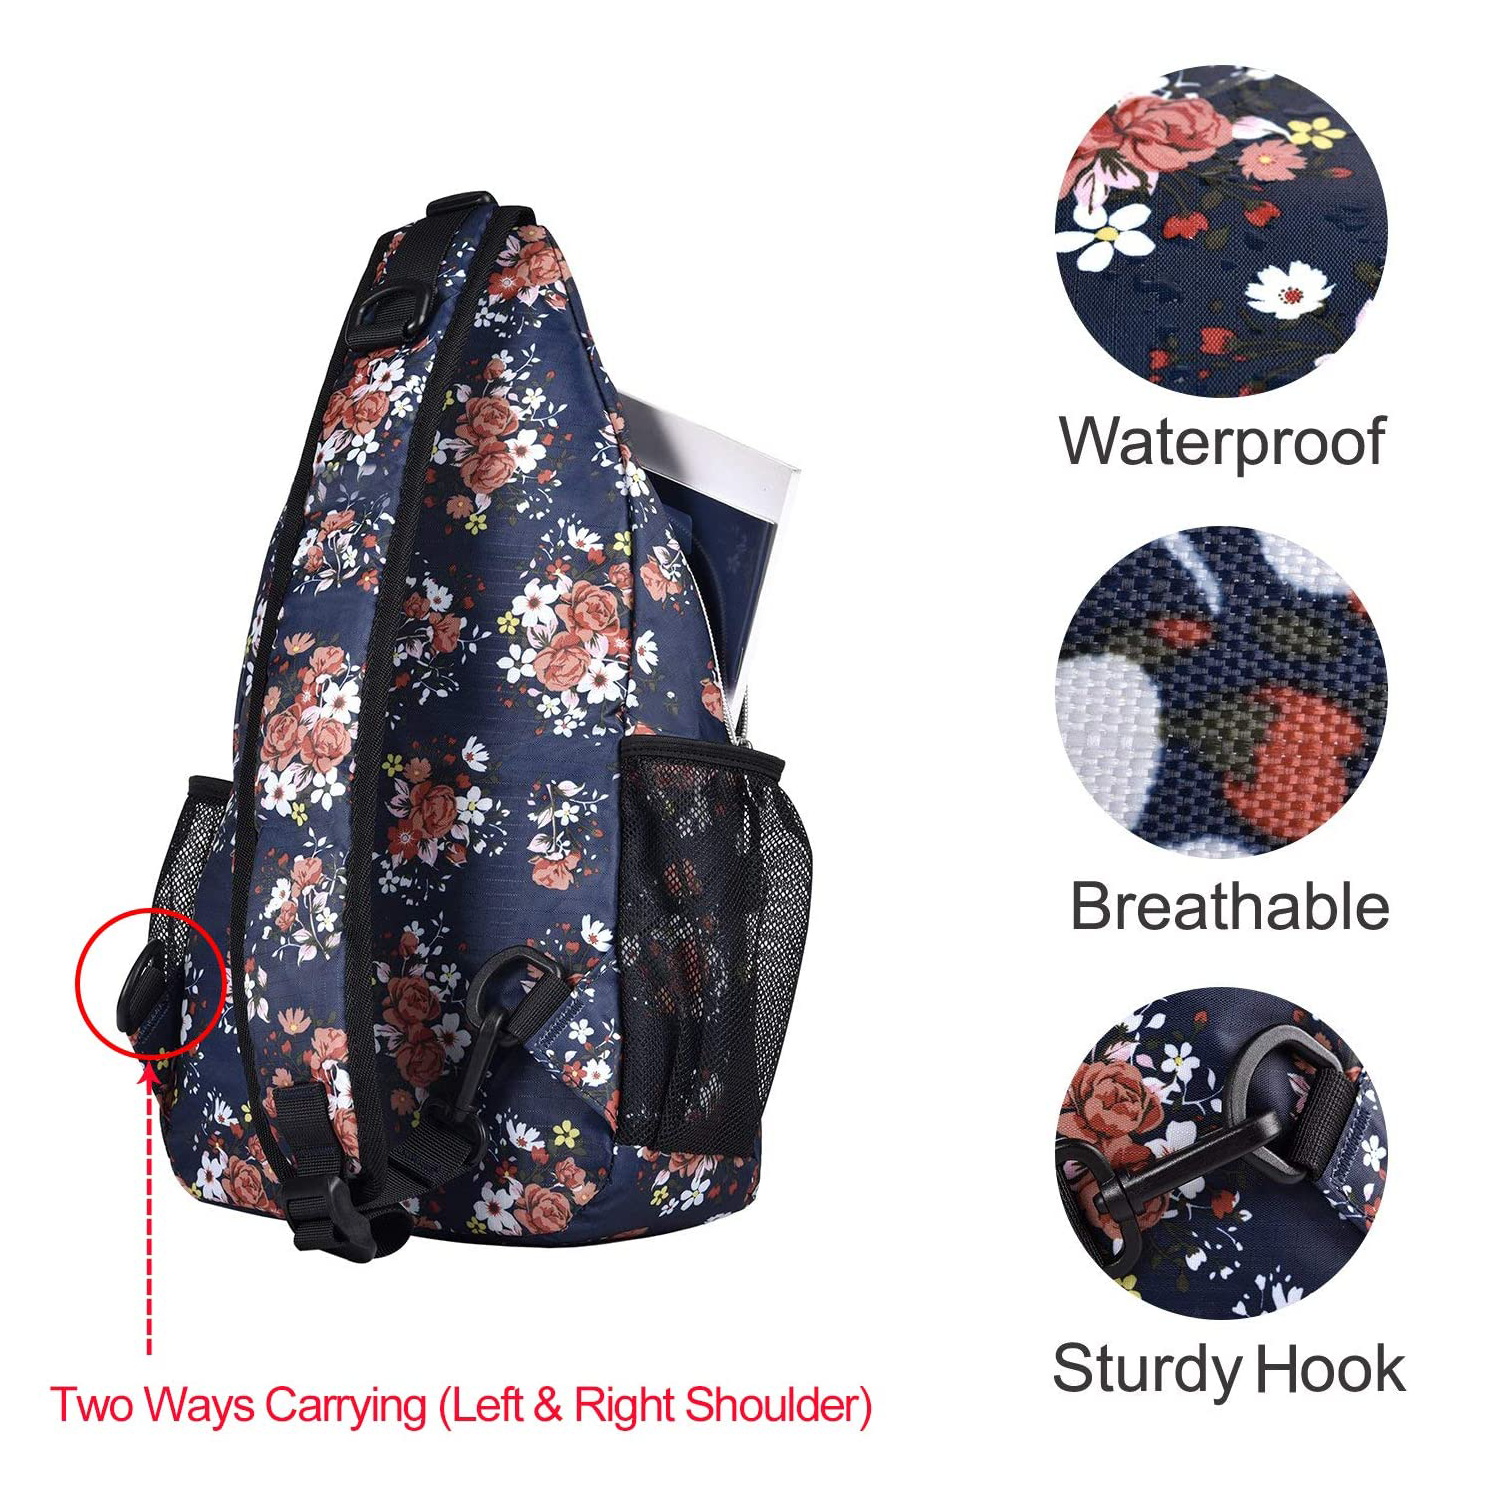 Mosiso Polyester Sling Bag Backpack Travel Hiking Outdoor Sport Crossbody Shoulder Bag Multipurpose Daypack for Women Men, Navy Blue Base Floral - image 4 of 6